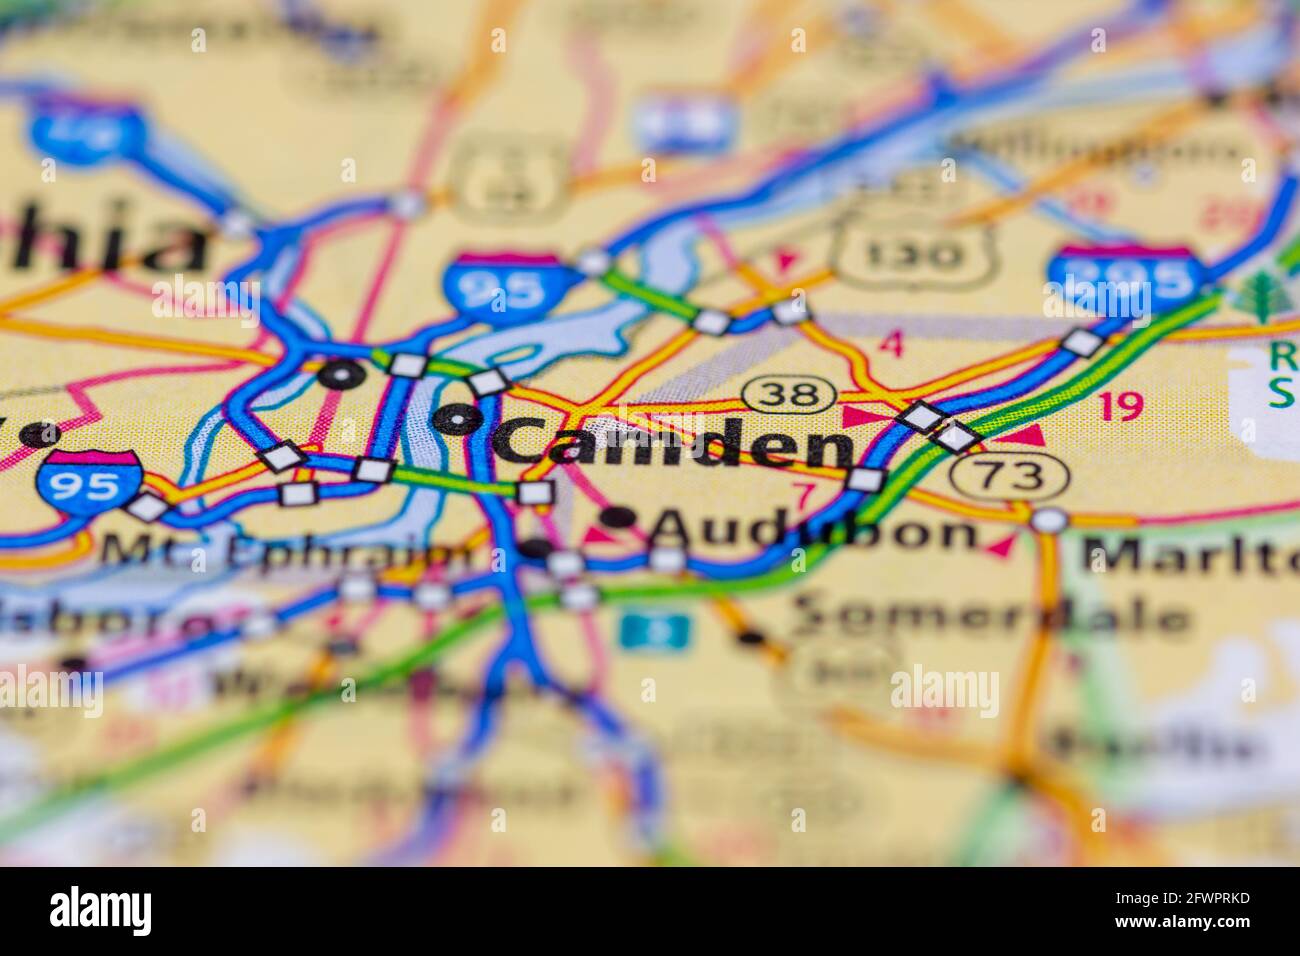 Camden New Jersey USA montré sur une carte de géographie ou carte routière Banque D'Images